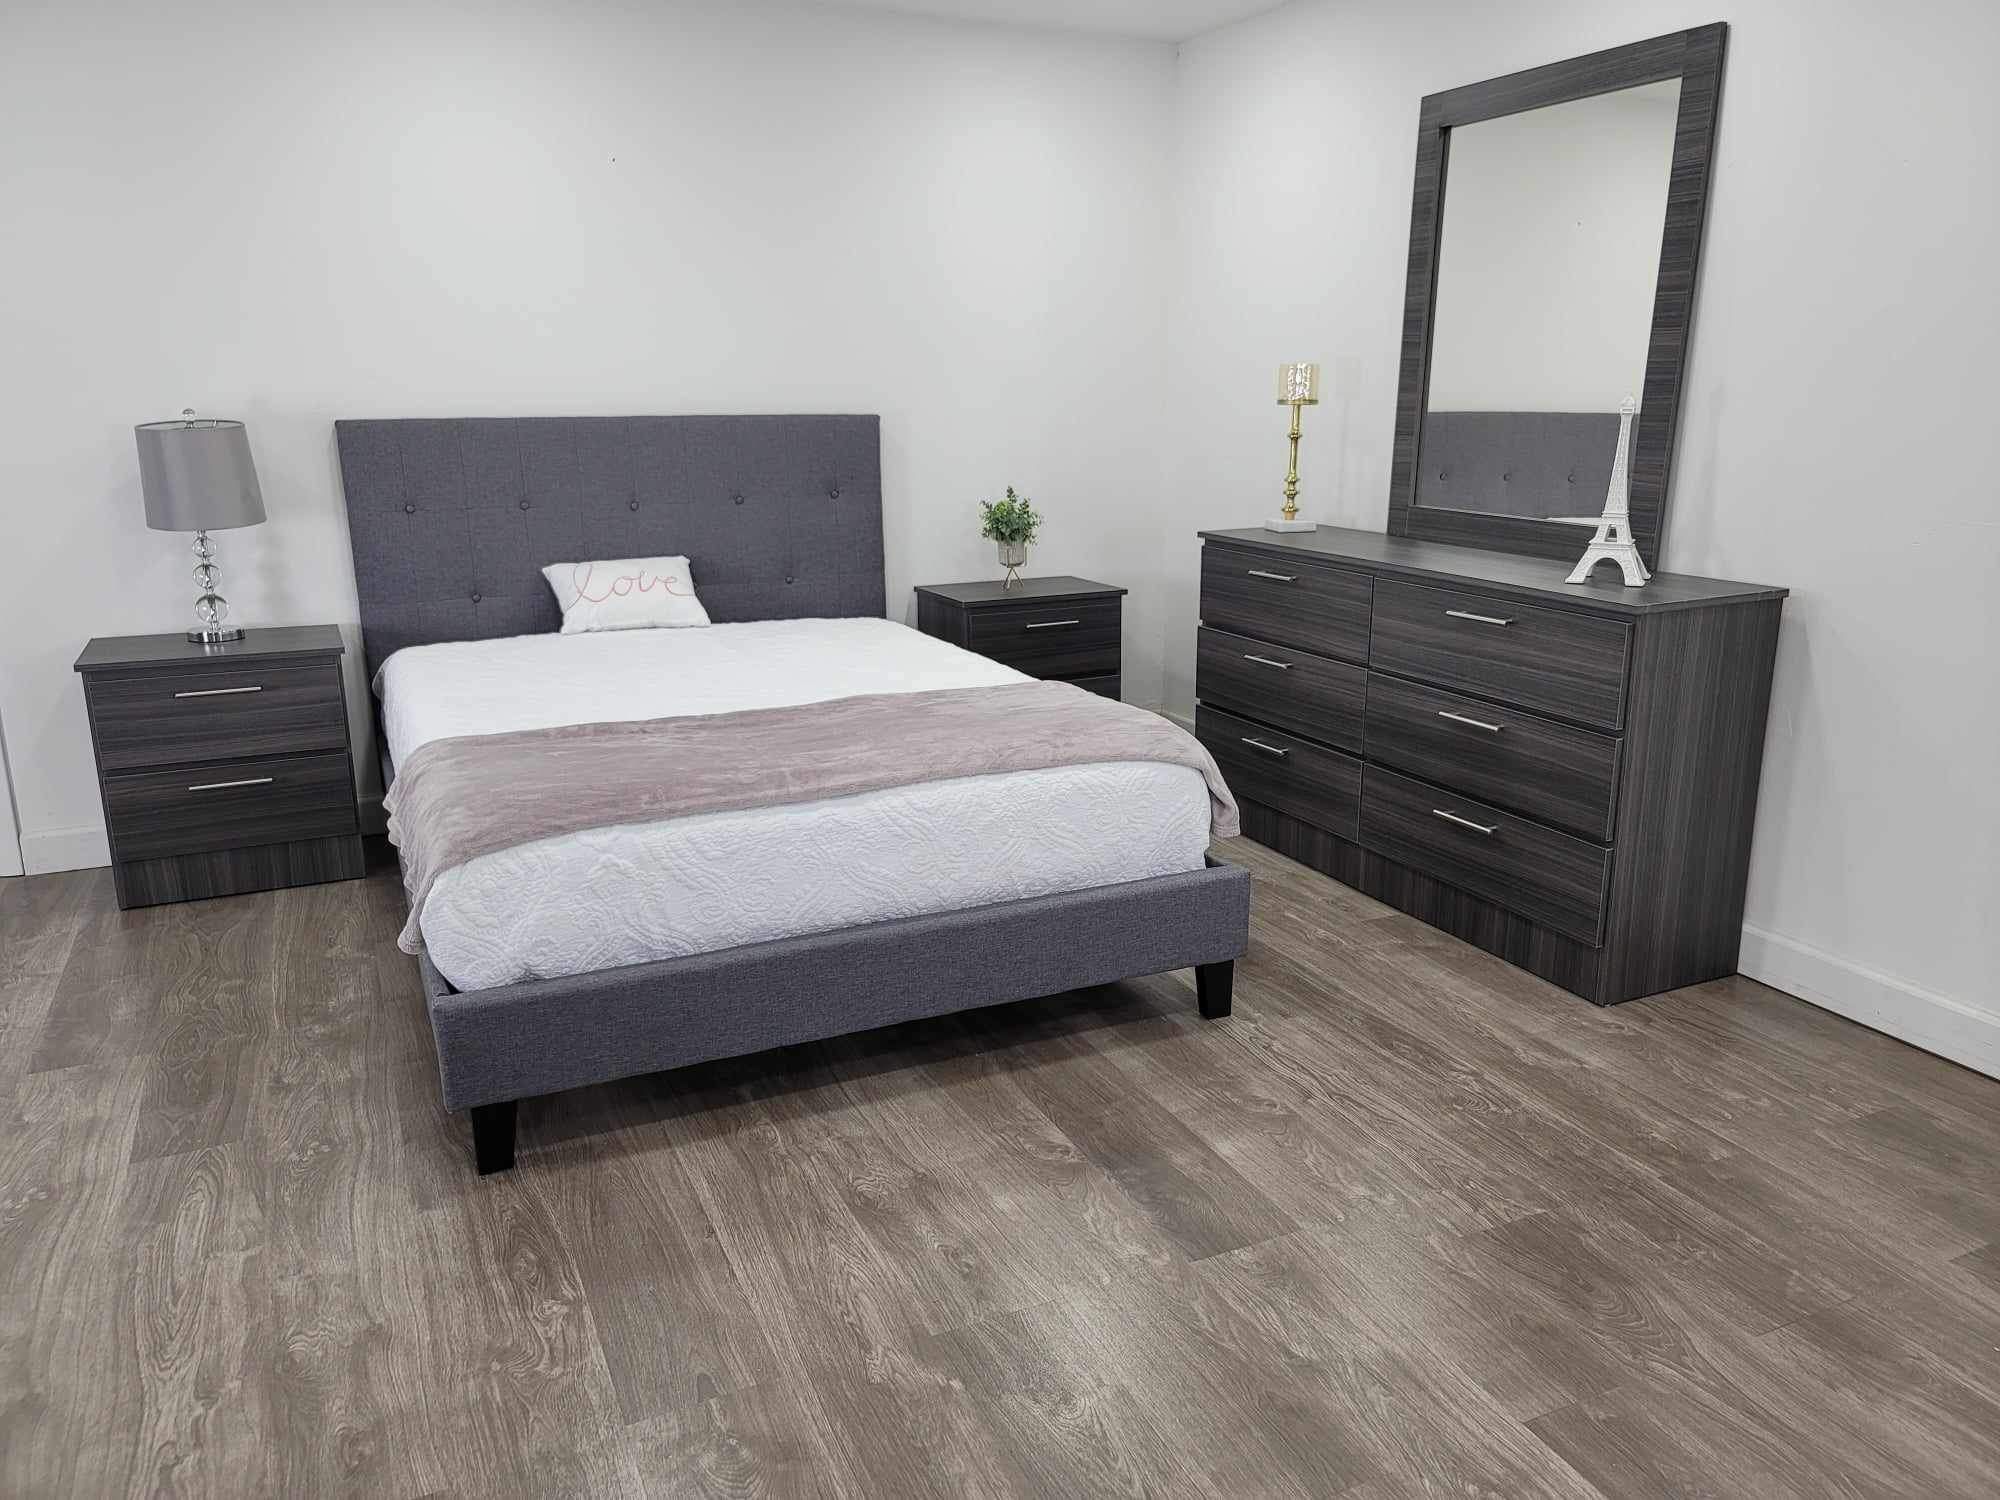 Brand New Queen Bedroom Sets / Juegos de Cuartos Nuevos a Estrenar … Delivery Available 🚚